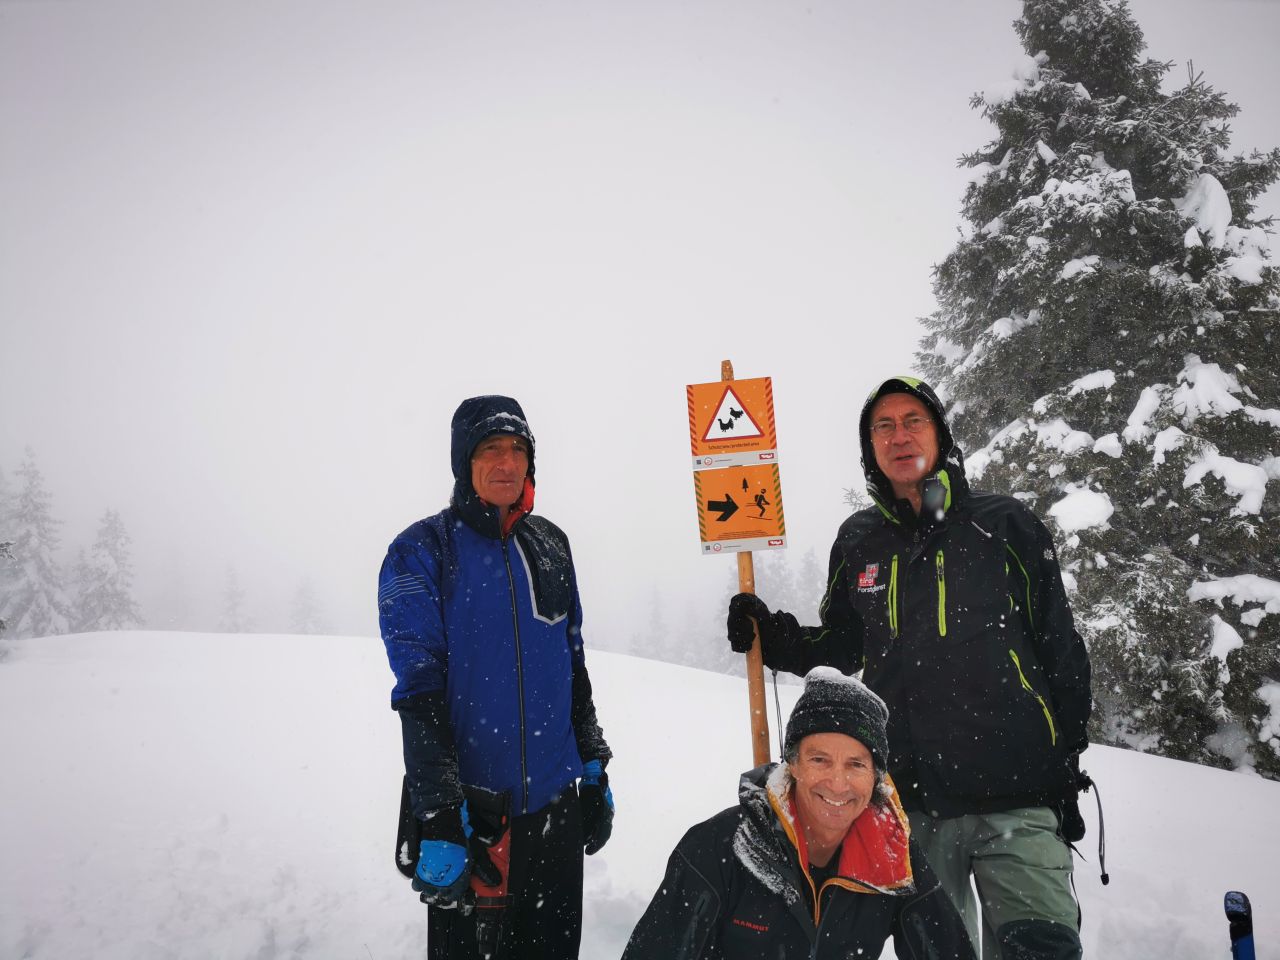 Group photo of 3 men in snow © Land Tirol